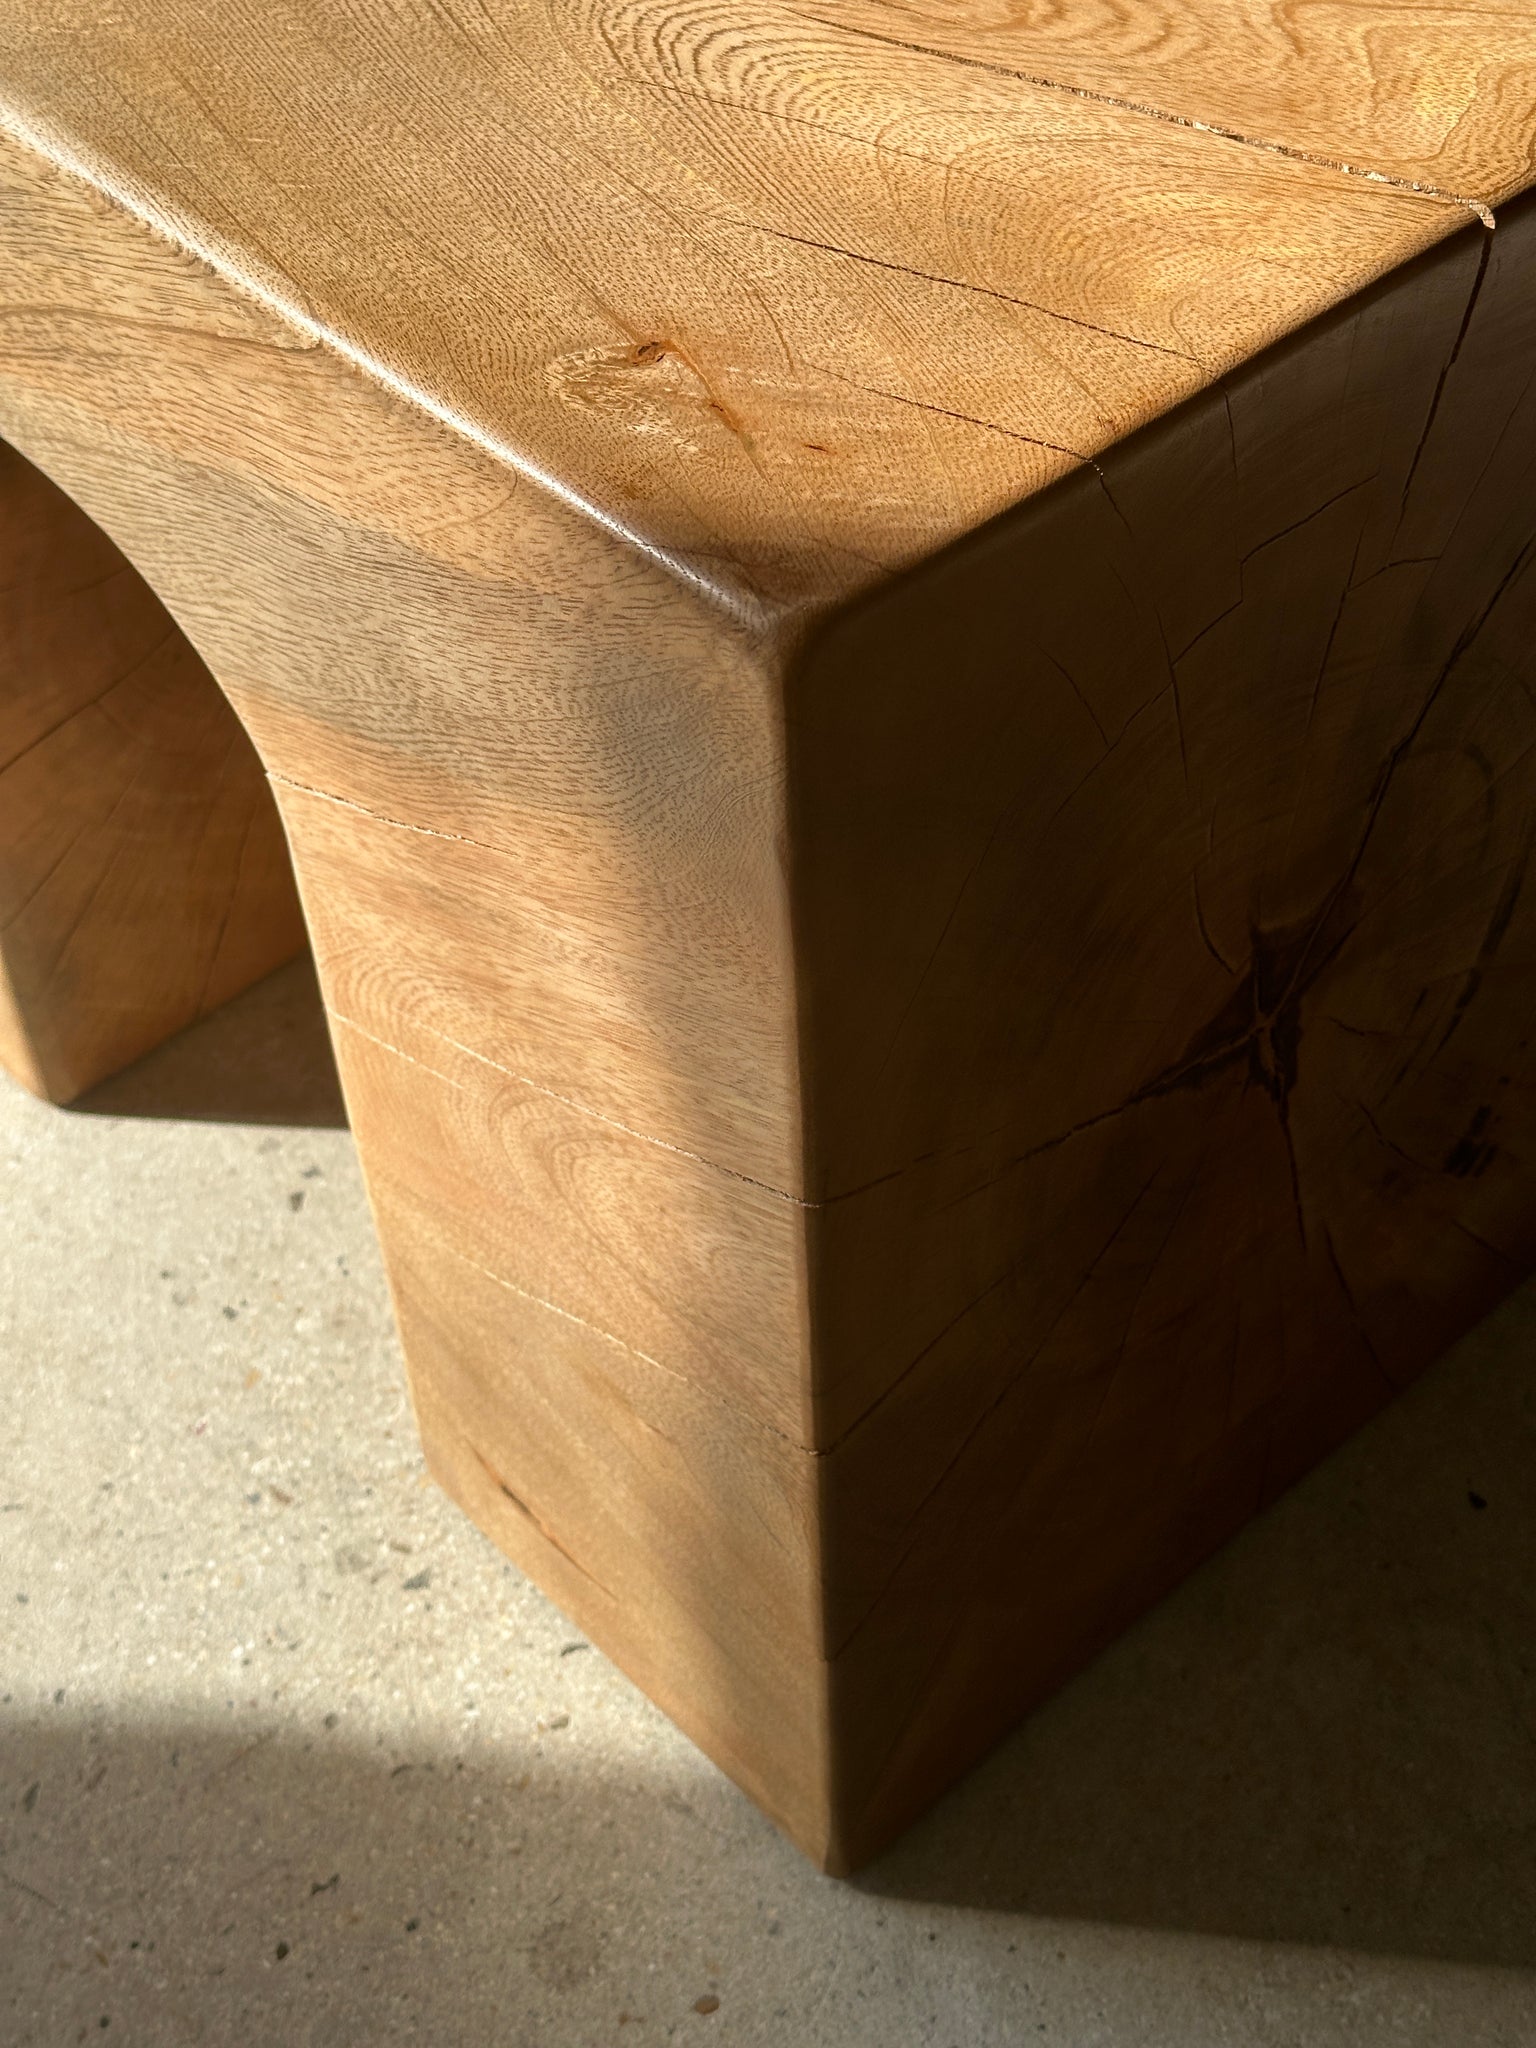 Banc en bois monoxyle massif piètement sculpté en 3 arches - Couleur bois naturel